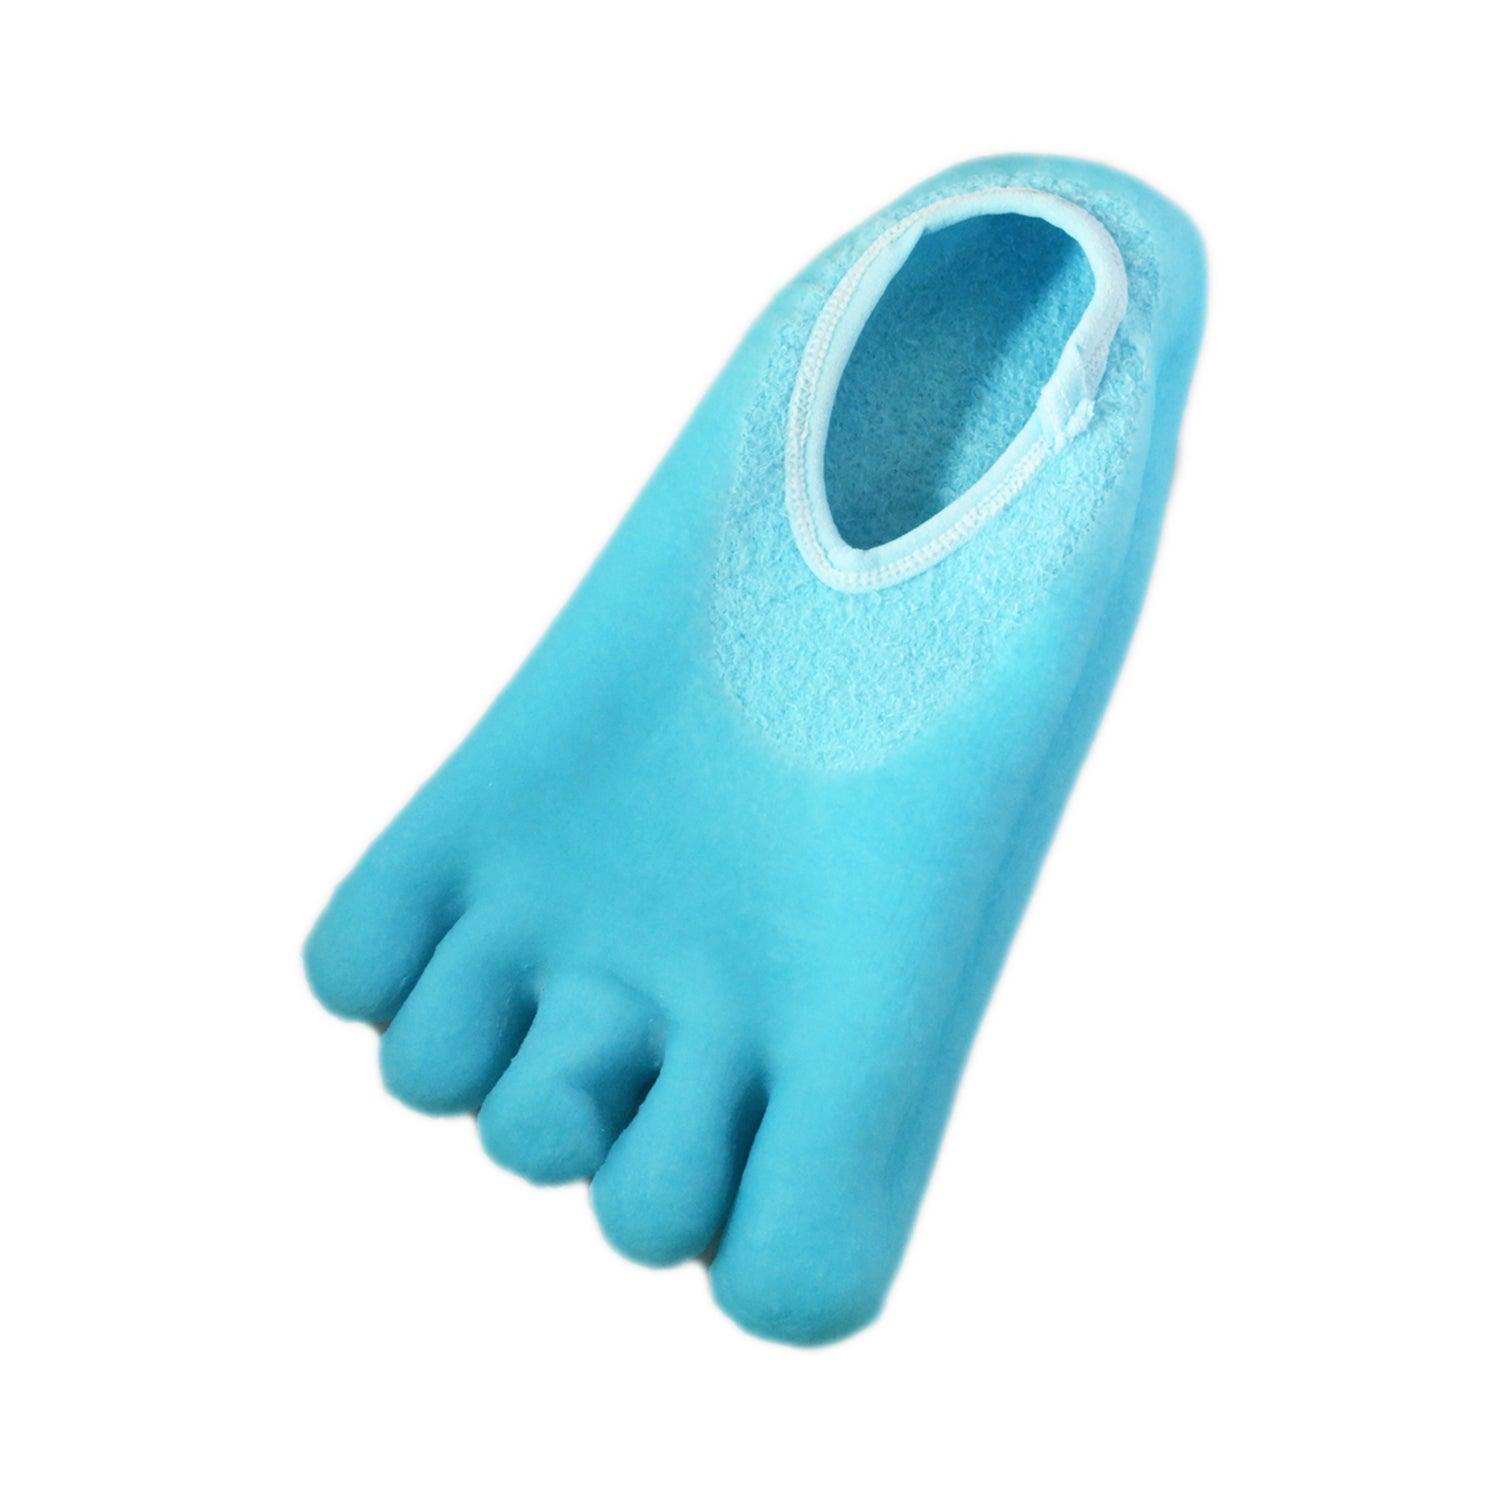 Nado Care 4 Pairs Heels Moisturizing Socks for Dry Cracked Heels Repair -  Moisturizing Gel Heel Sleeves Open Toe Comfy Socks Day Night - Pink, Blue